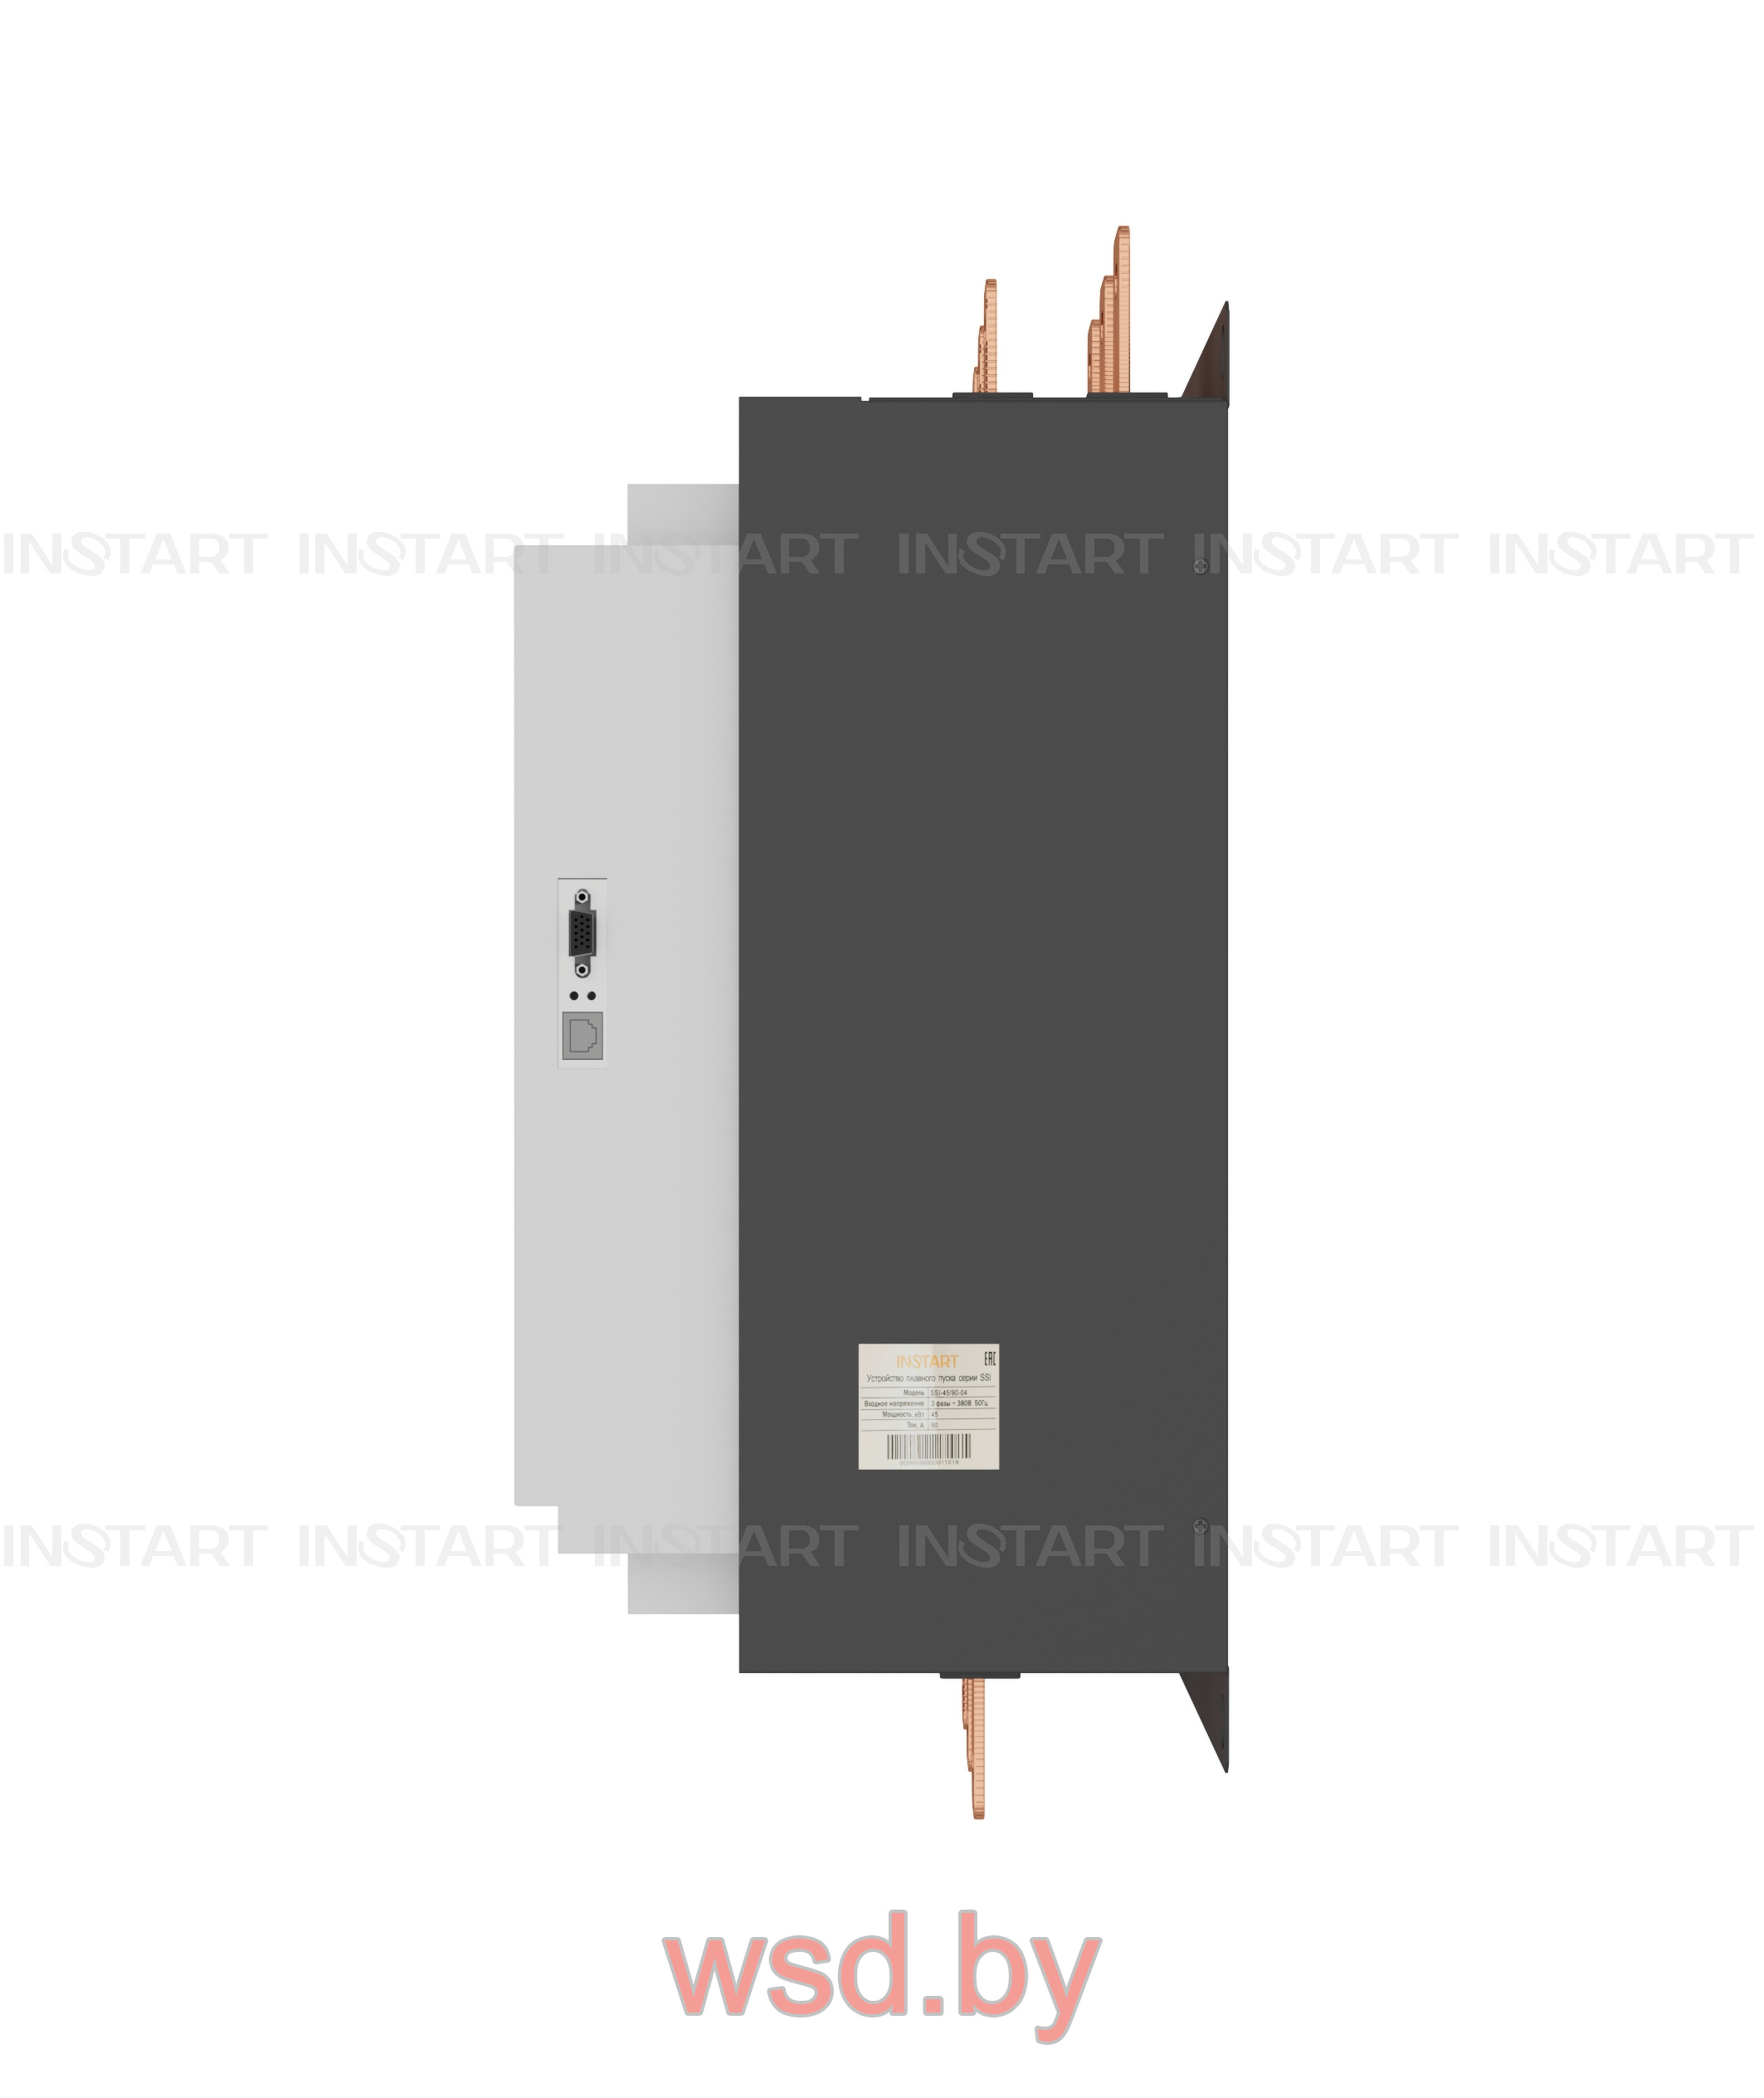 Устройство плавного пуска INSTART SSI-355/710-04 355кВт 710А 3 ~ 380В ± 15% 50/60Гц. Фото N2